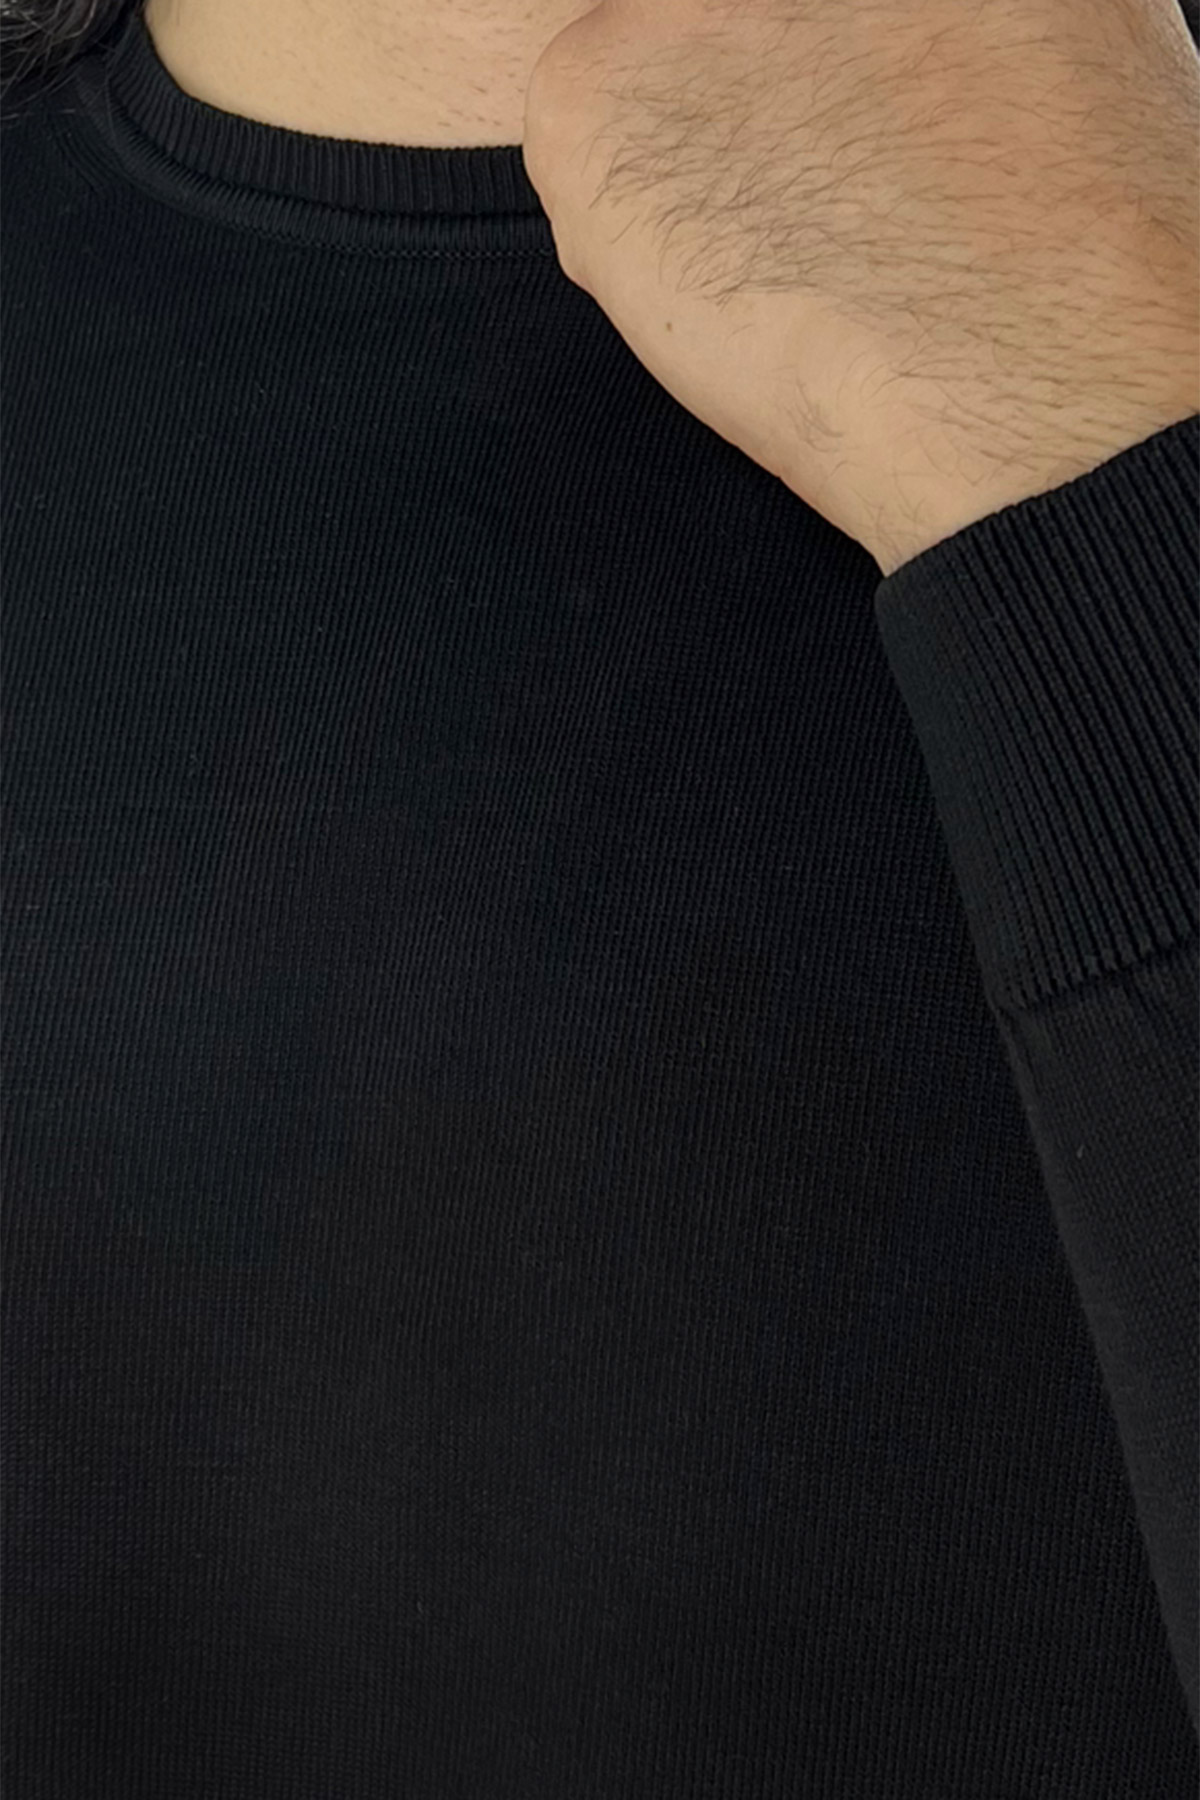 Maglioncino da uomo nero maniche lunghe 100% cotone di filo tinta unita finezza 12